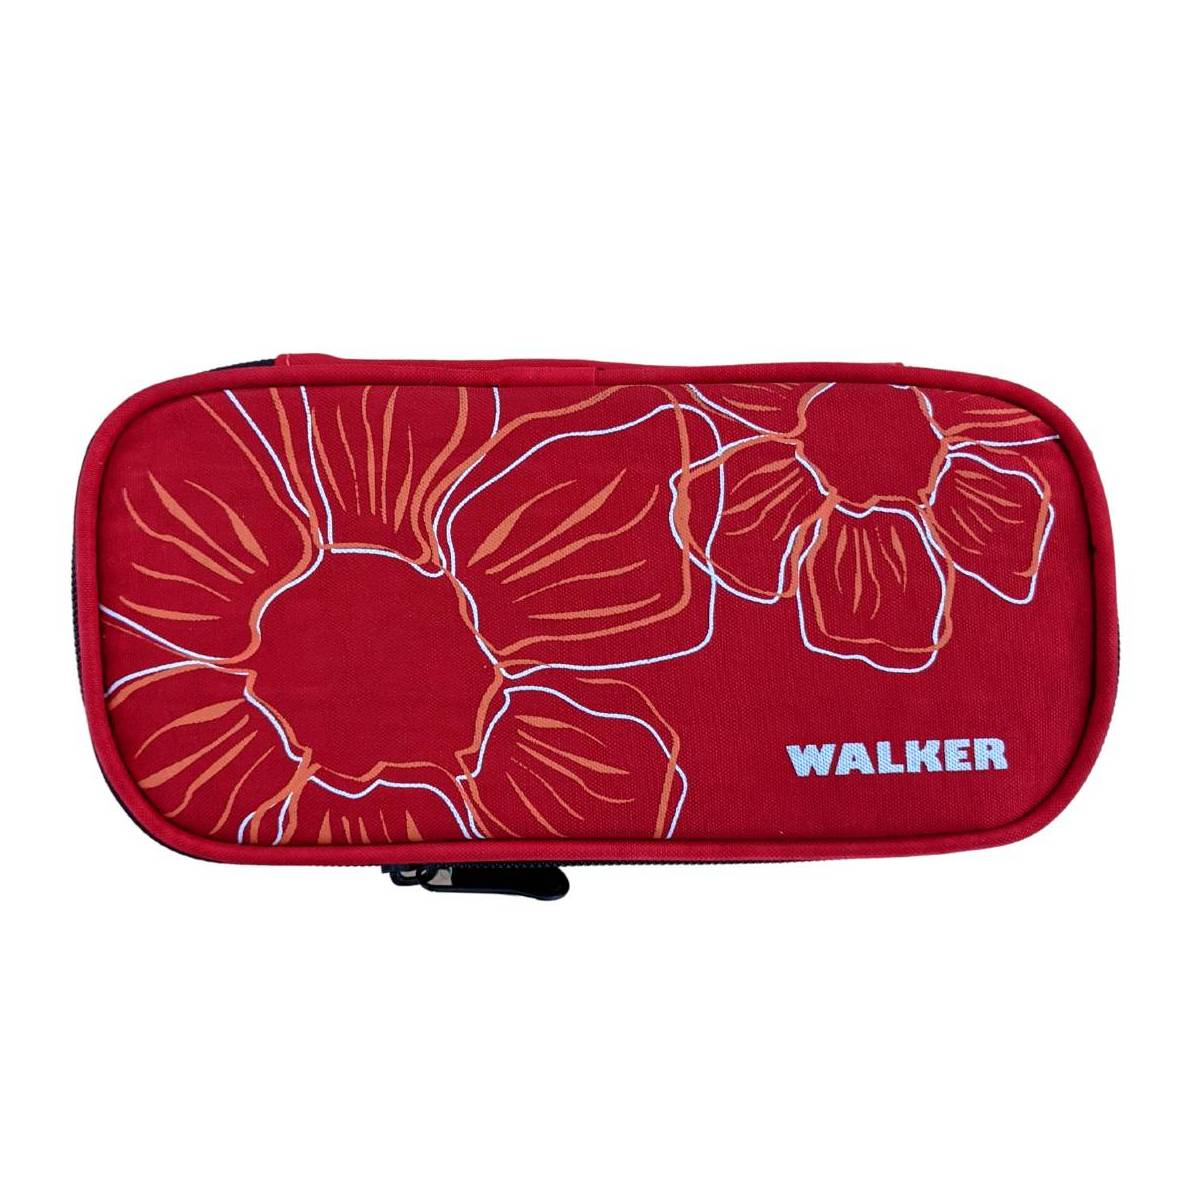 Walker by Schneider Red Case